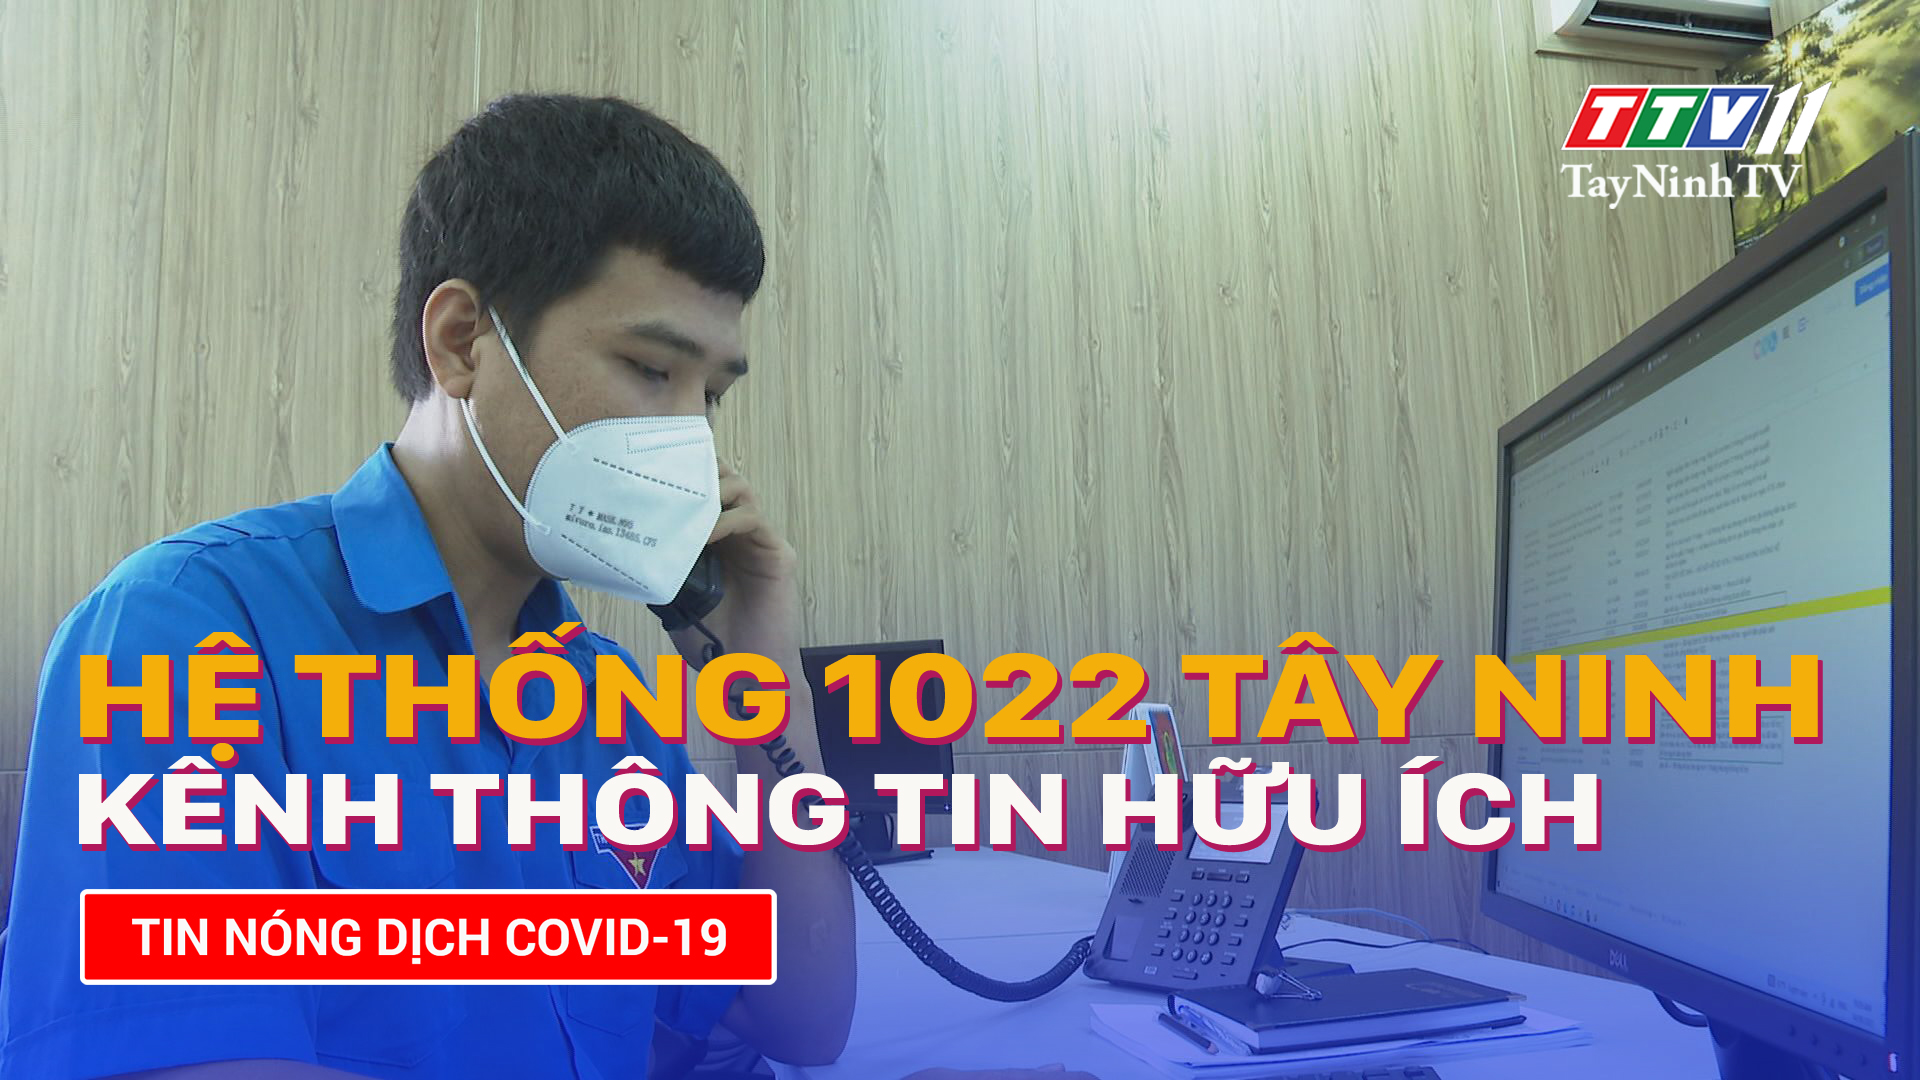 Hệ thống 1022 Tây Ninh – Kênh thông tin hữu ích | TayNinhTV